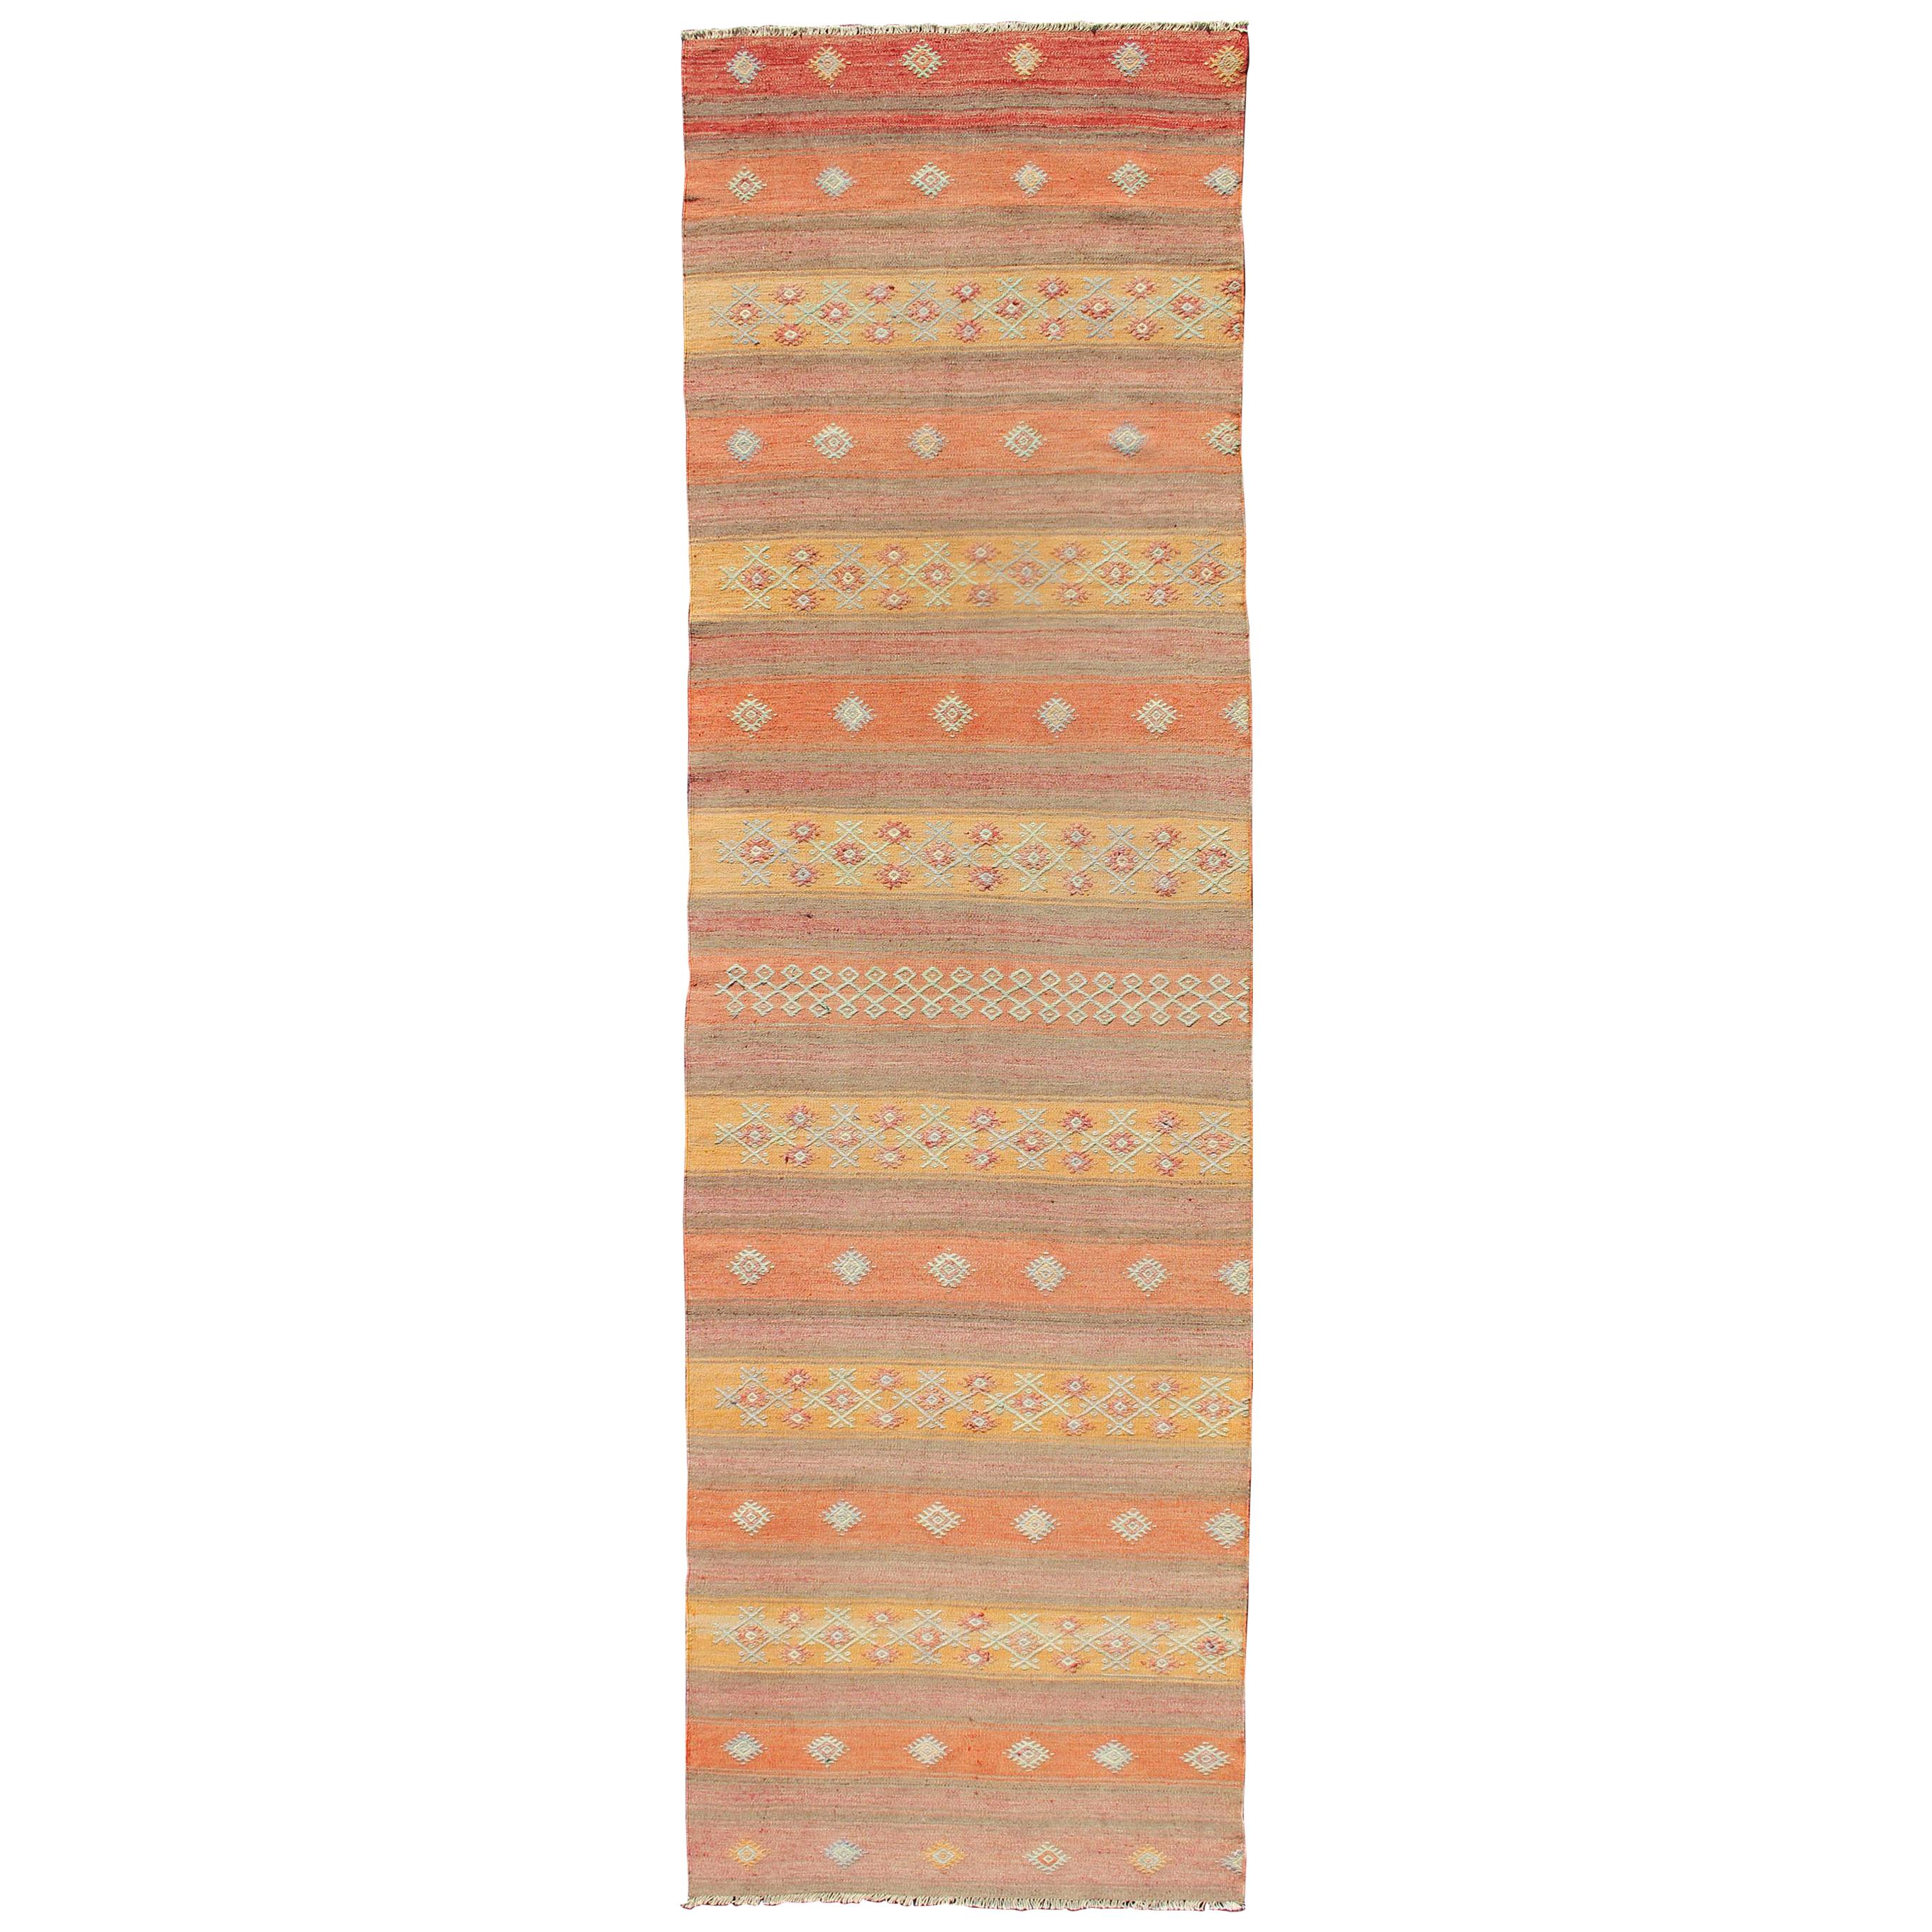 Bunter türkischer Kelim-Teppich im Vintage-Stil mit horizontalen Streifen und geometrischen Formen